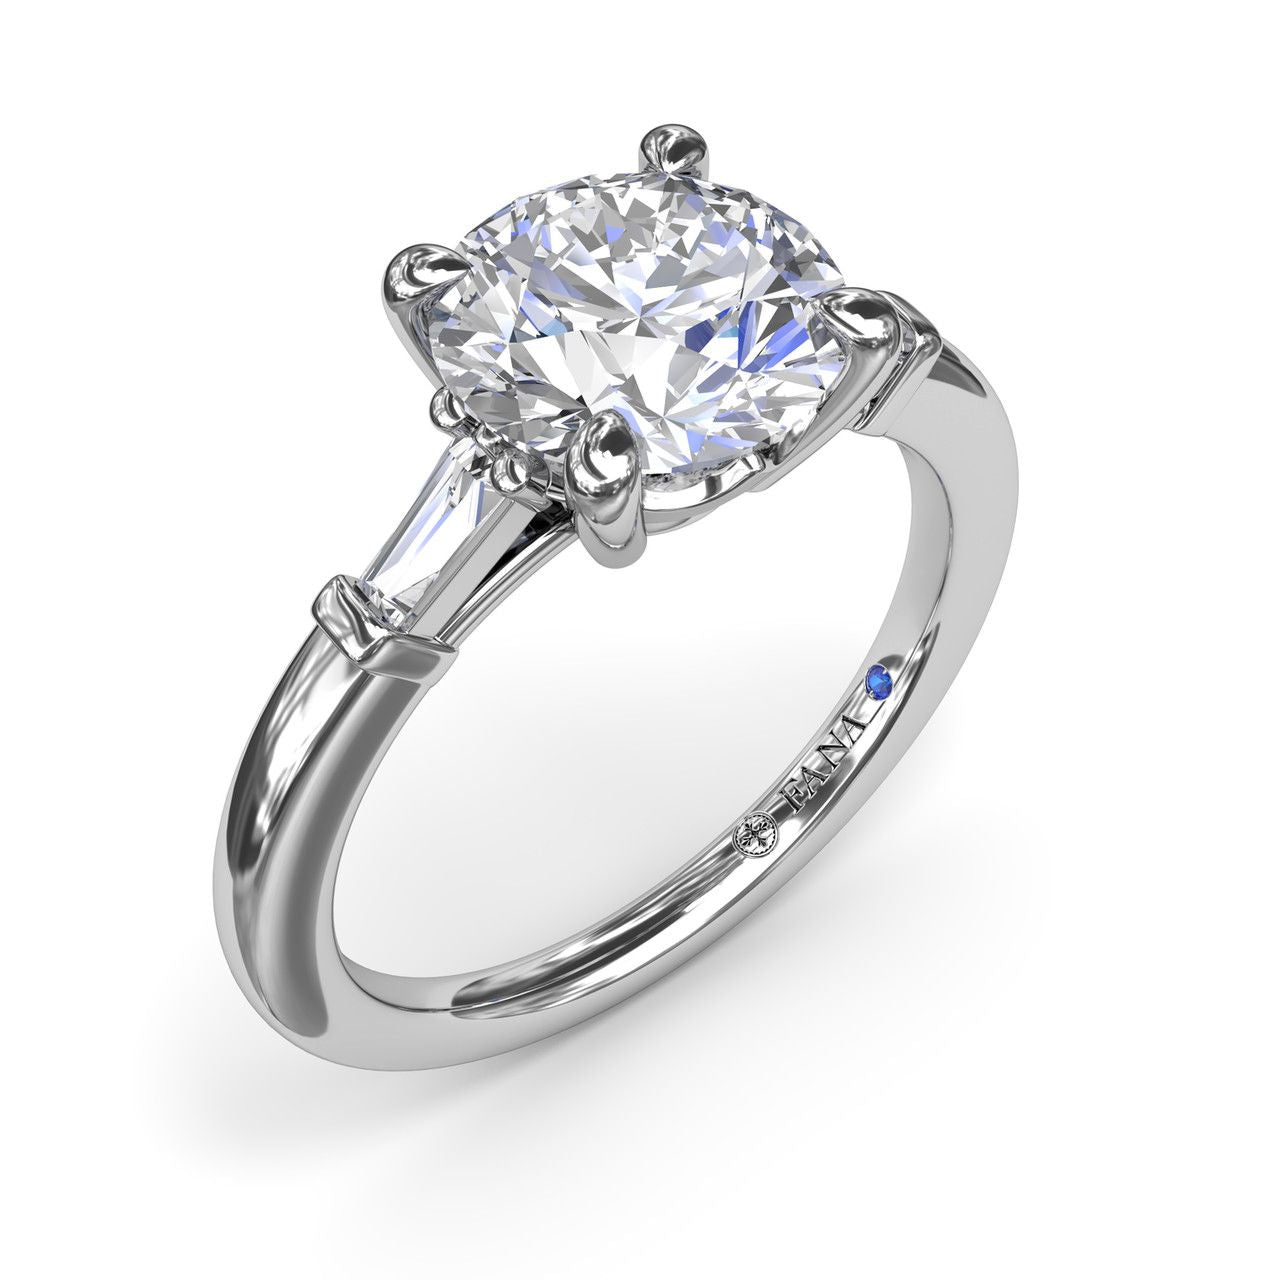 FANA 14 KT White Gold 3 Stone Baguette Diamond Engagement Ring S4070/WG